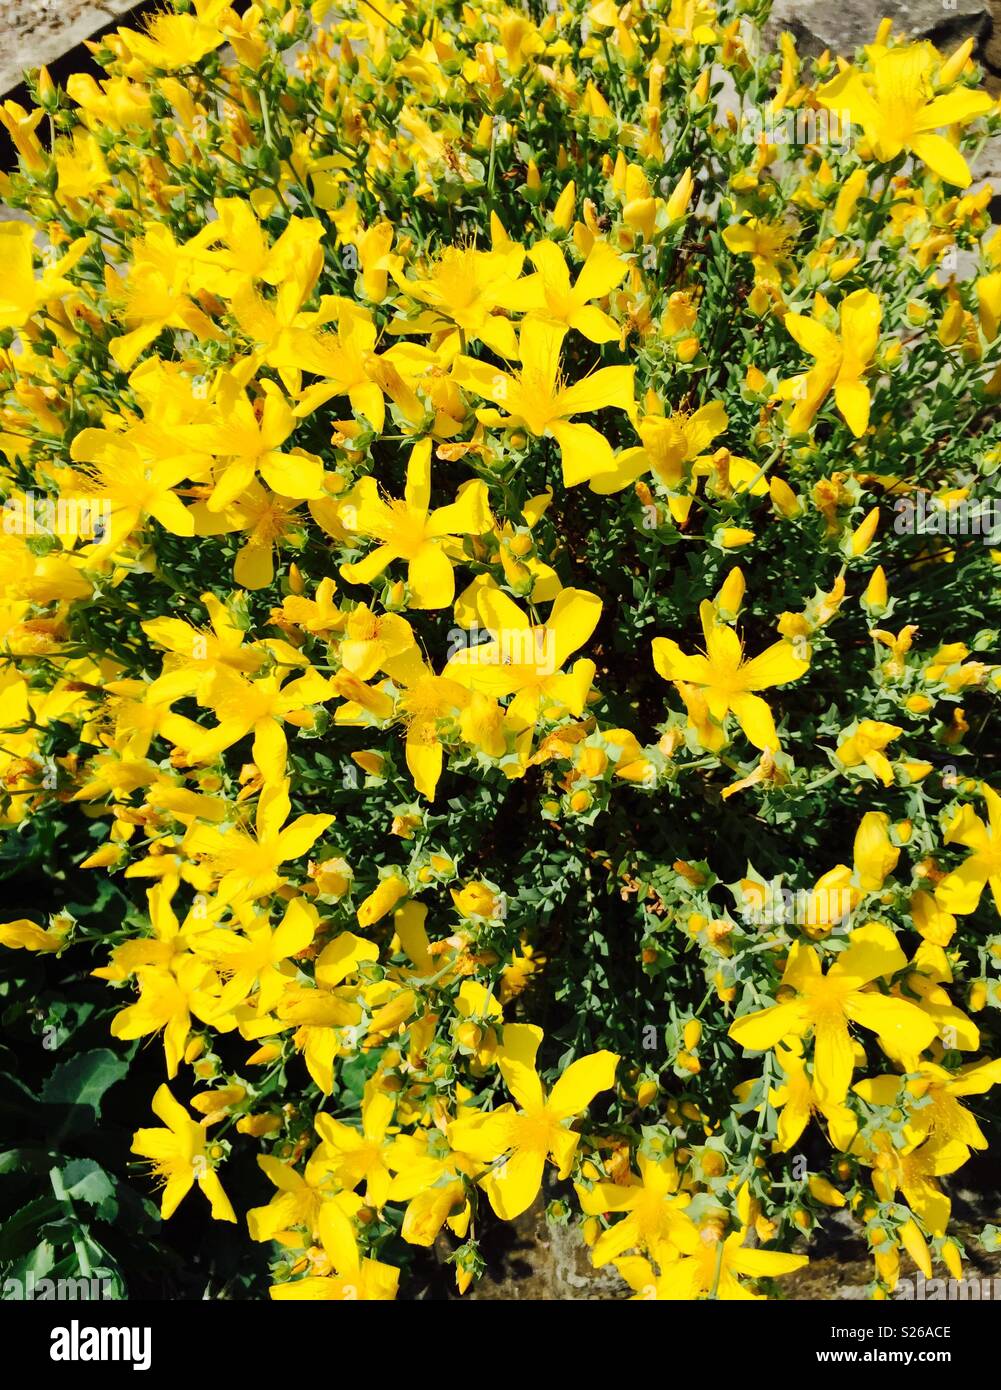 Vibrant yellow flowers Stock Photo